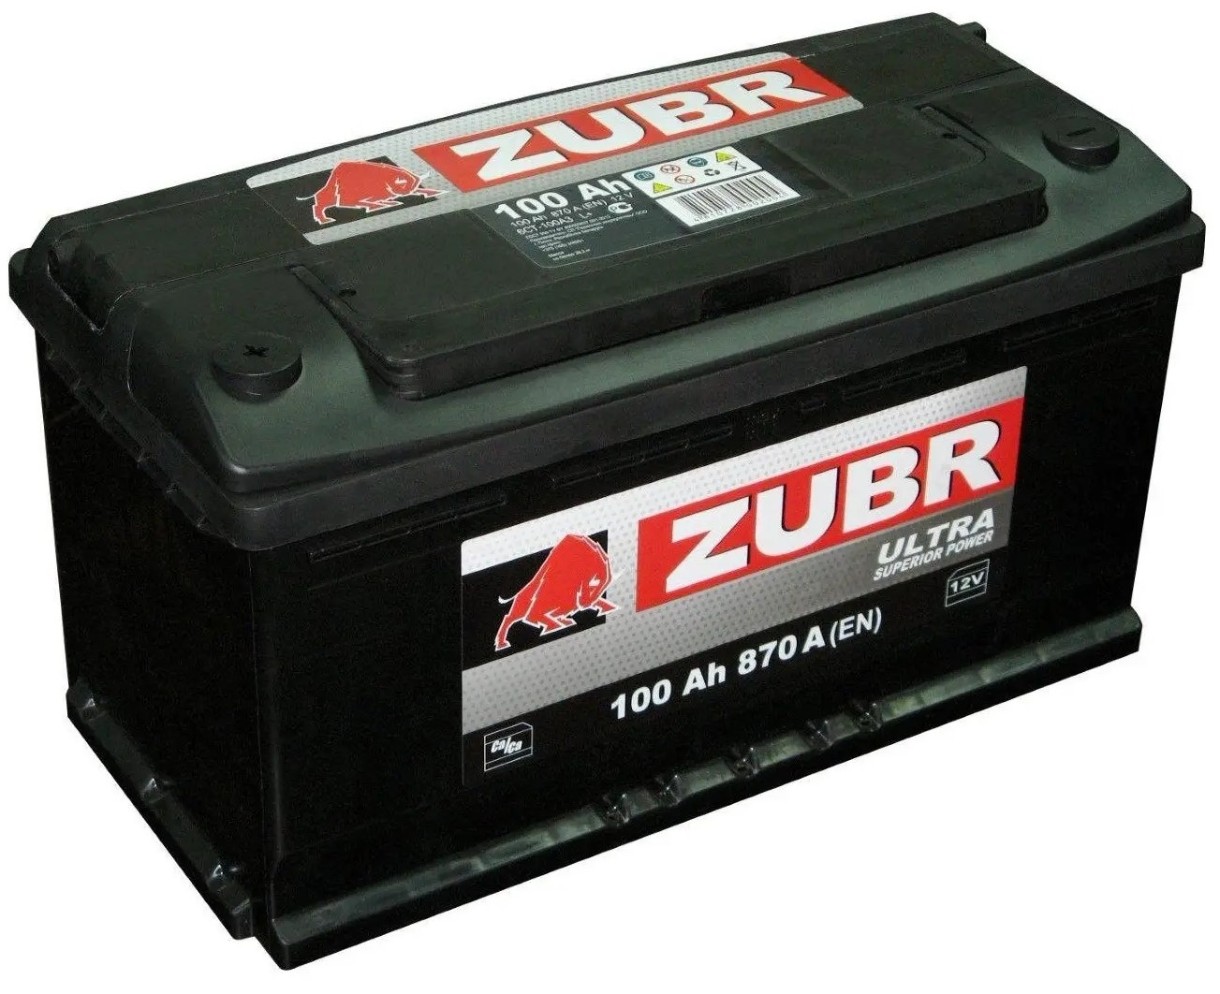 Автомобильный аккумулятор Zubr 6CT Ultra 100 Ah R+